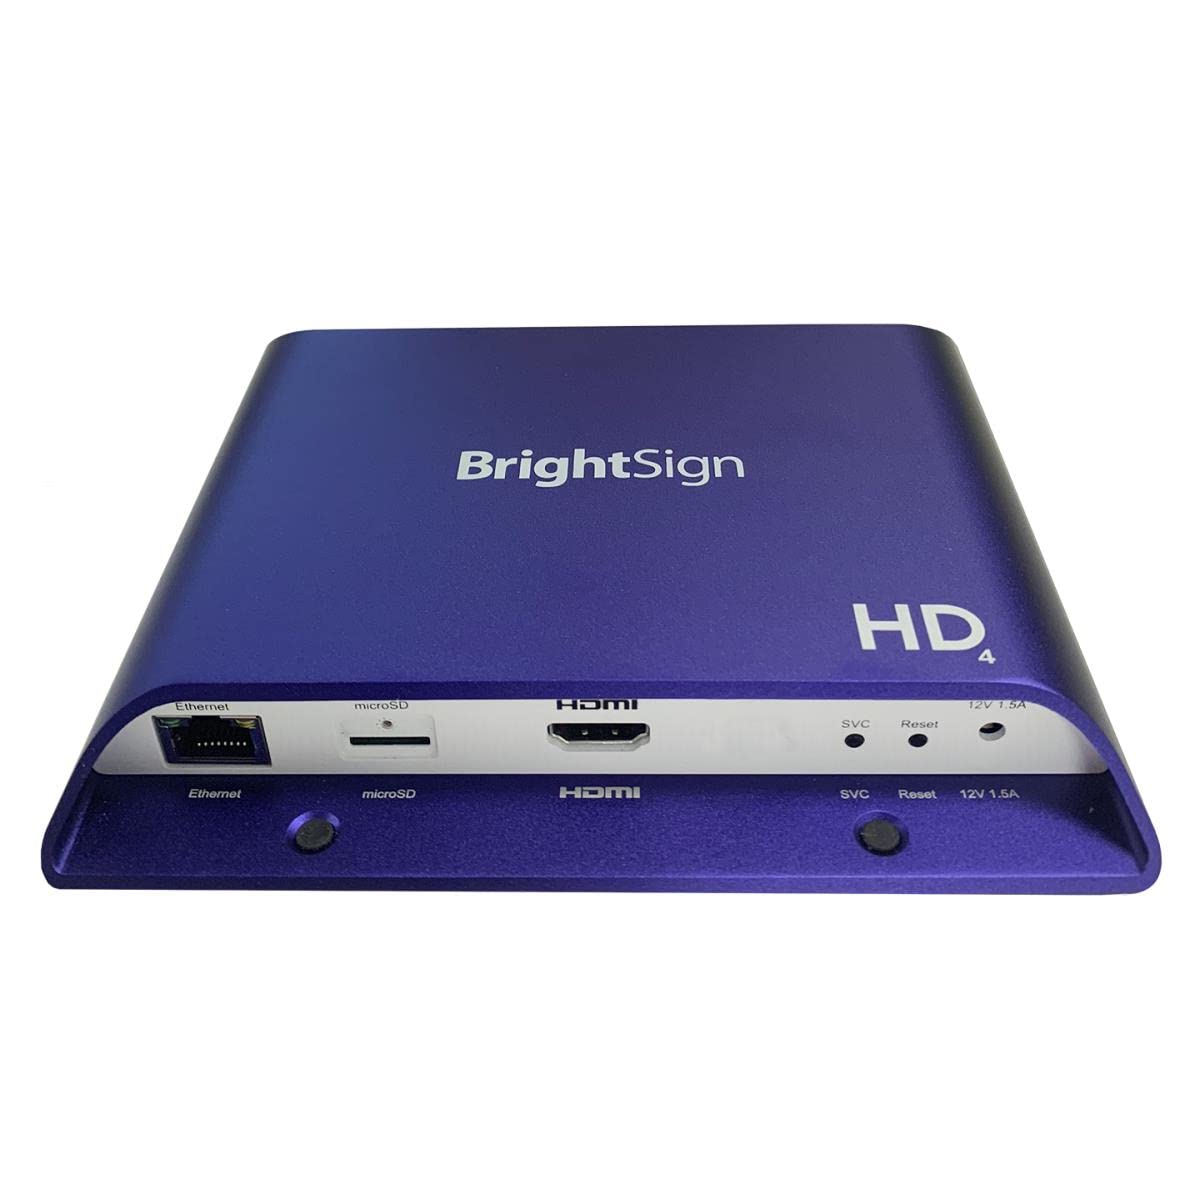 BrightSign مشغل لافتات رقمية I / O قياسي بدقة عالية كاملة HTML5 (HD224)